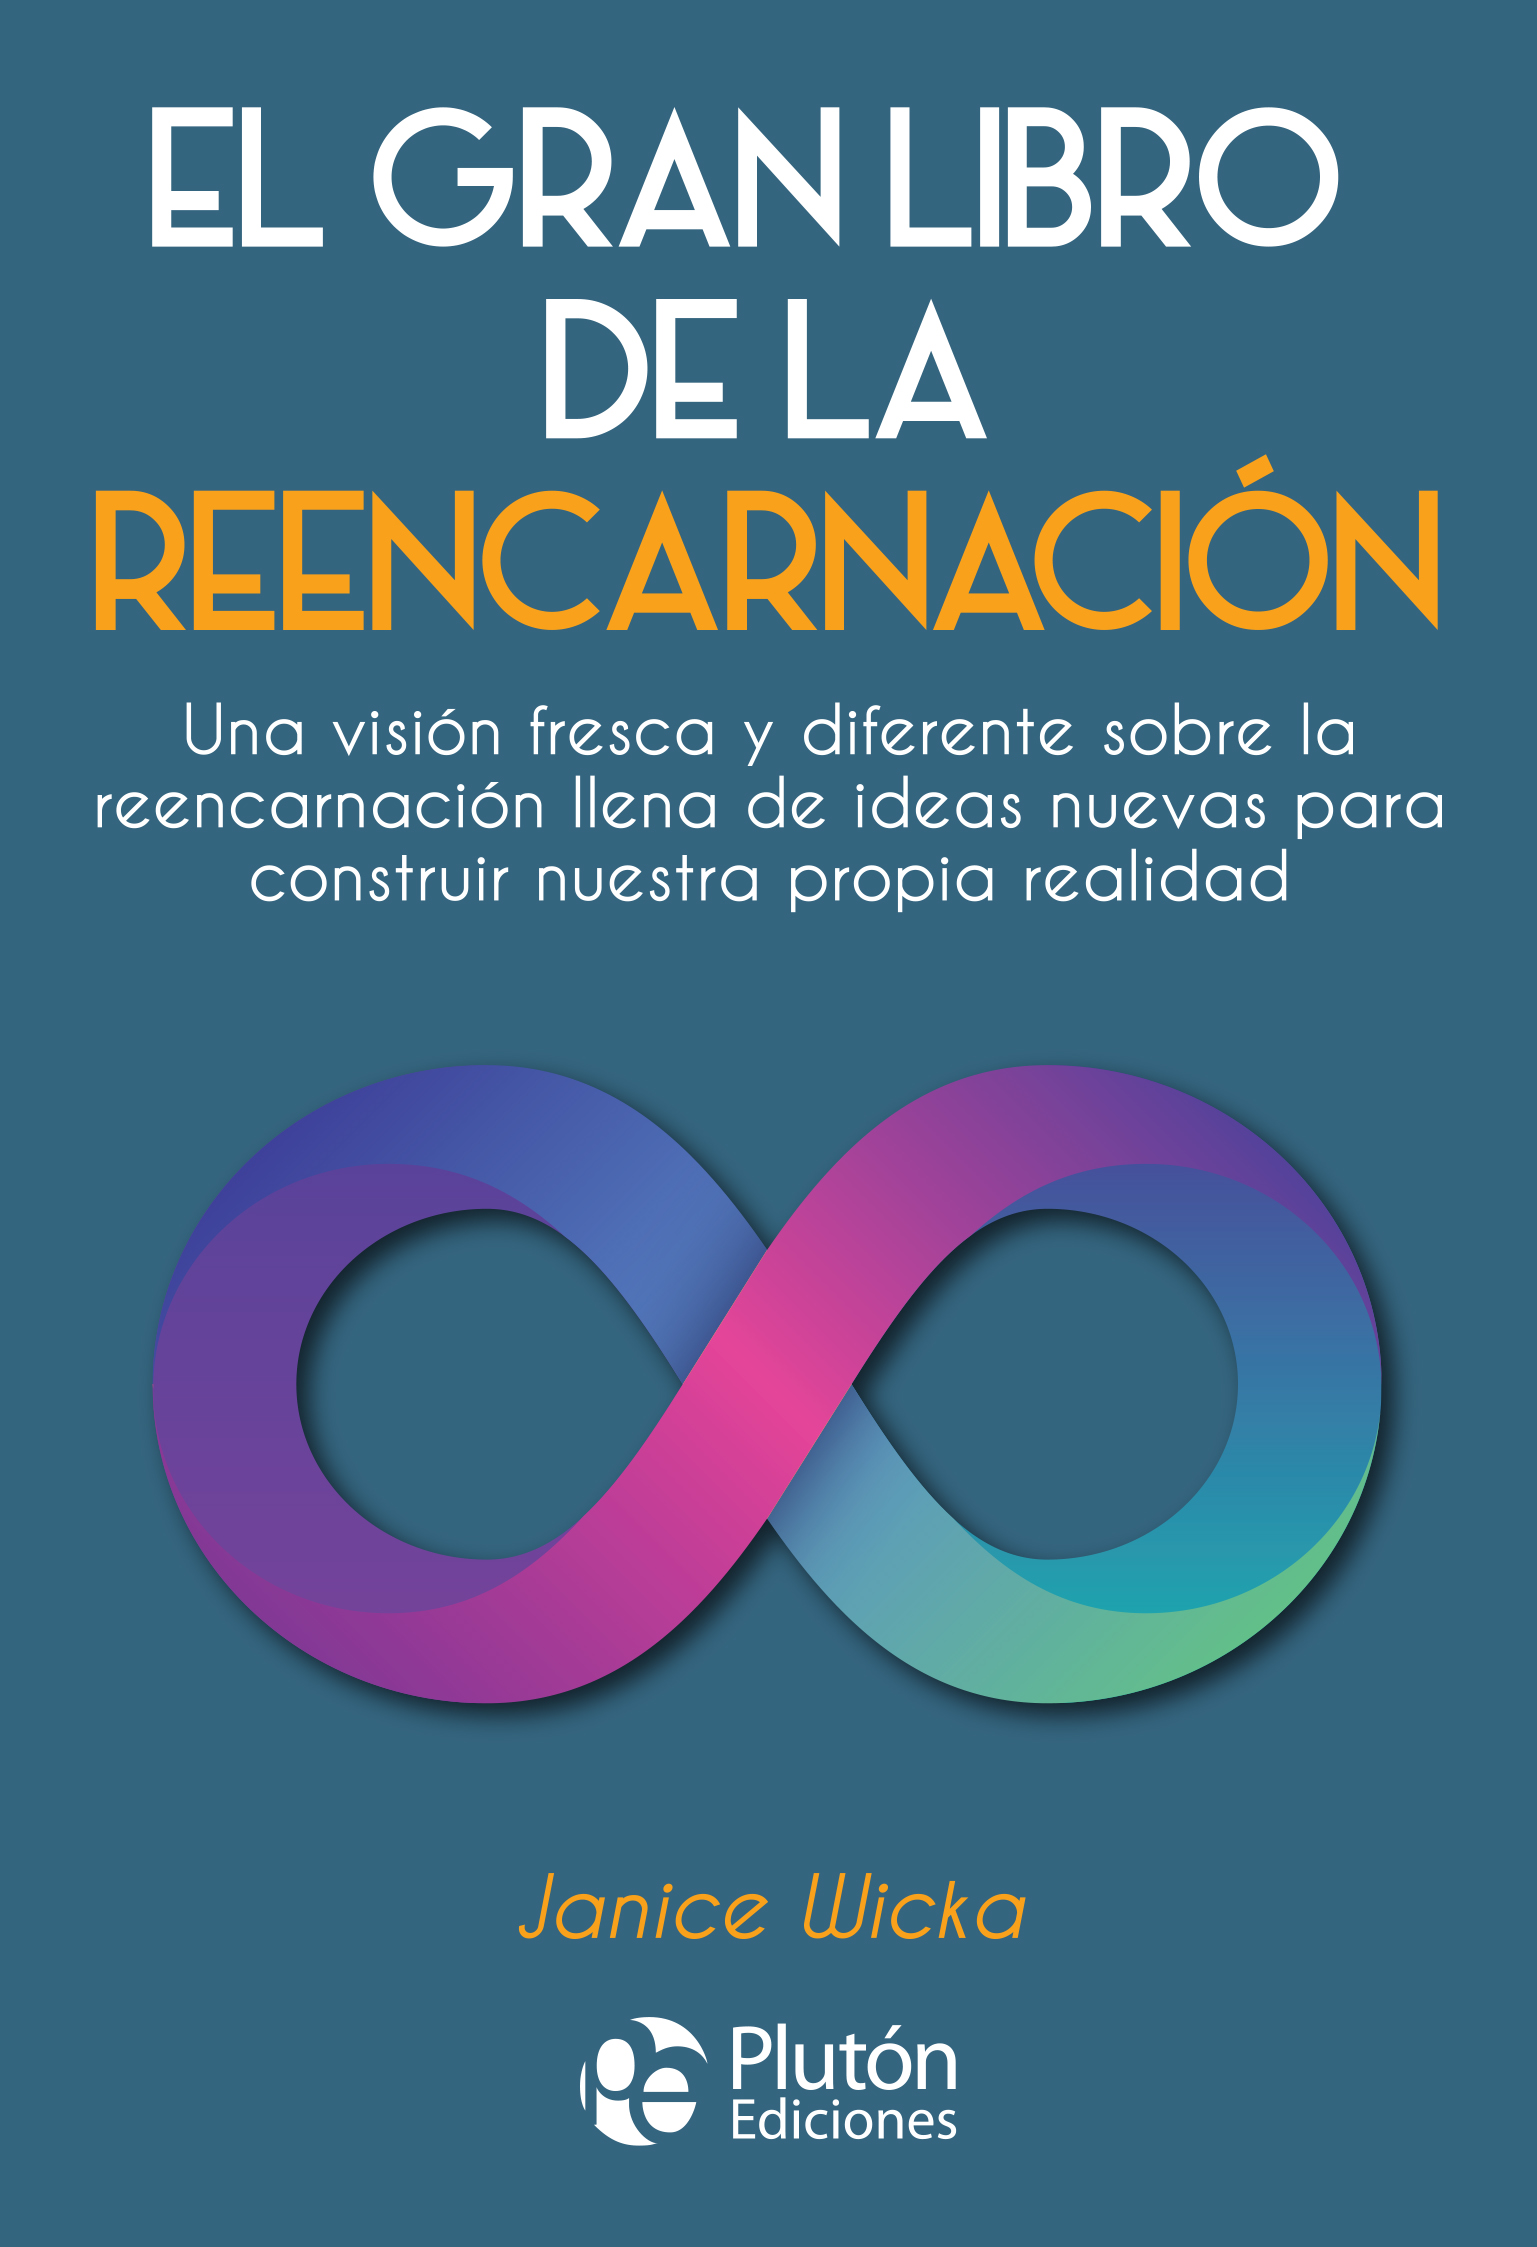 Cubierta_-_El_Gran_Libro_de_la_Reencarnacion_-_Sept_2019_-_PLASTIFICADO_MATE.jpg